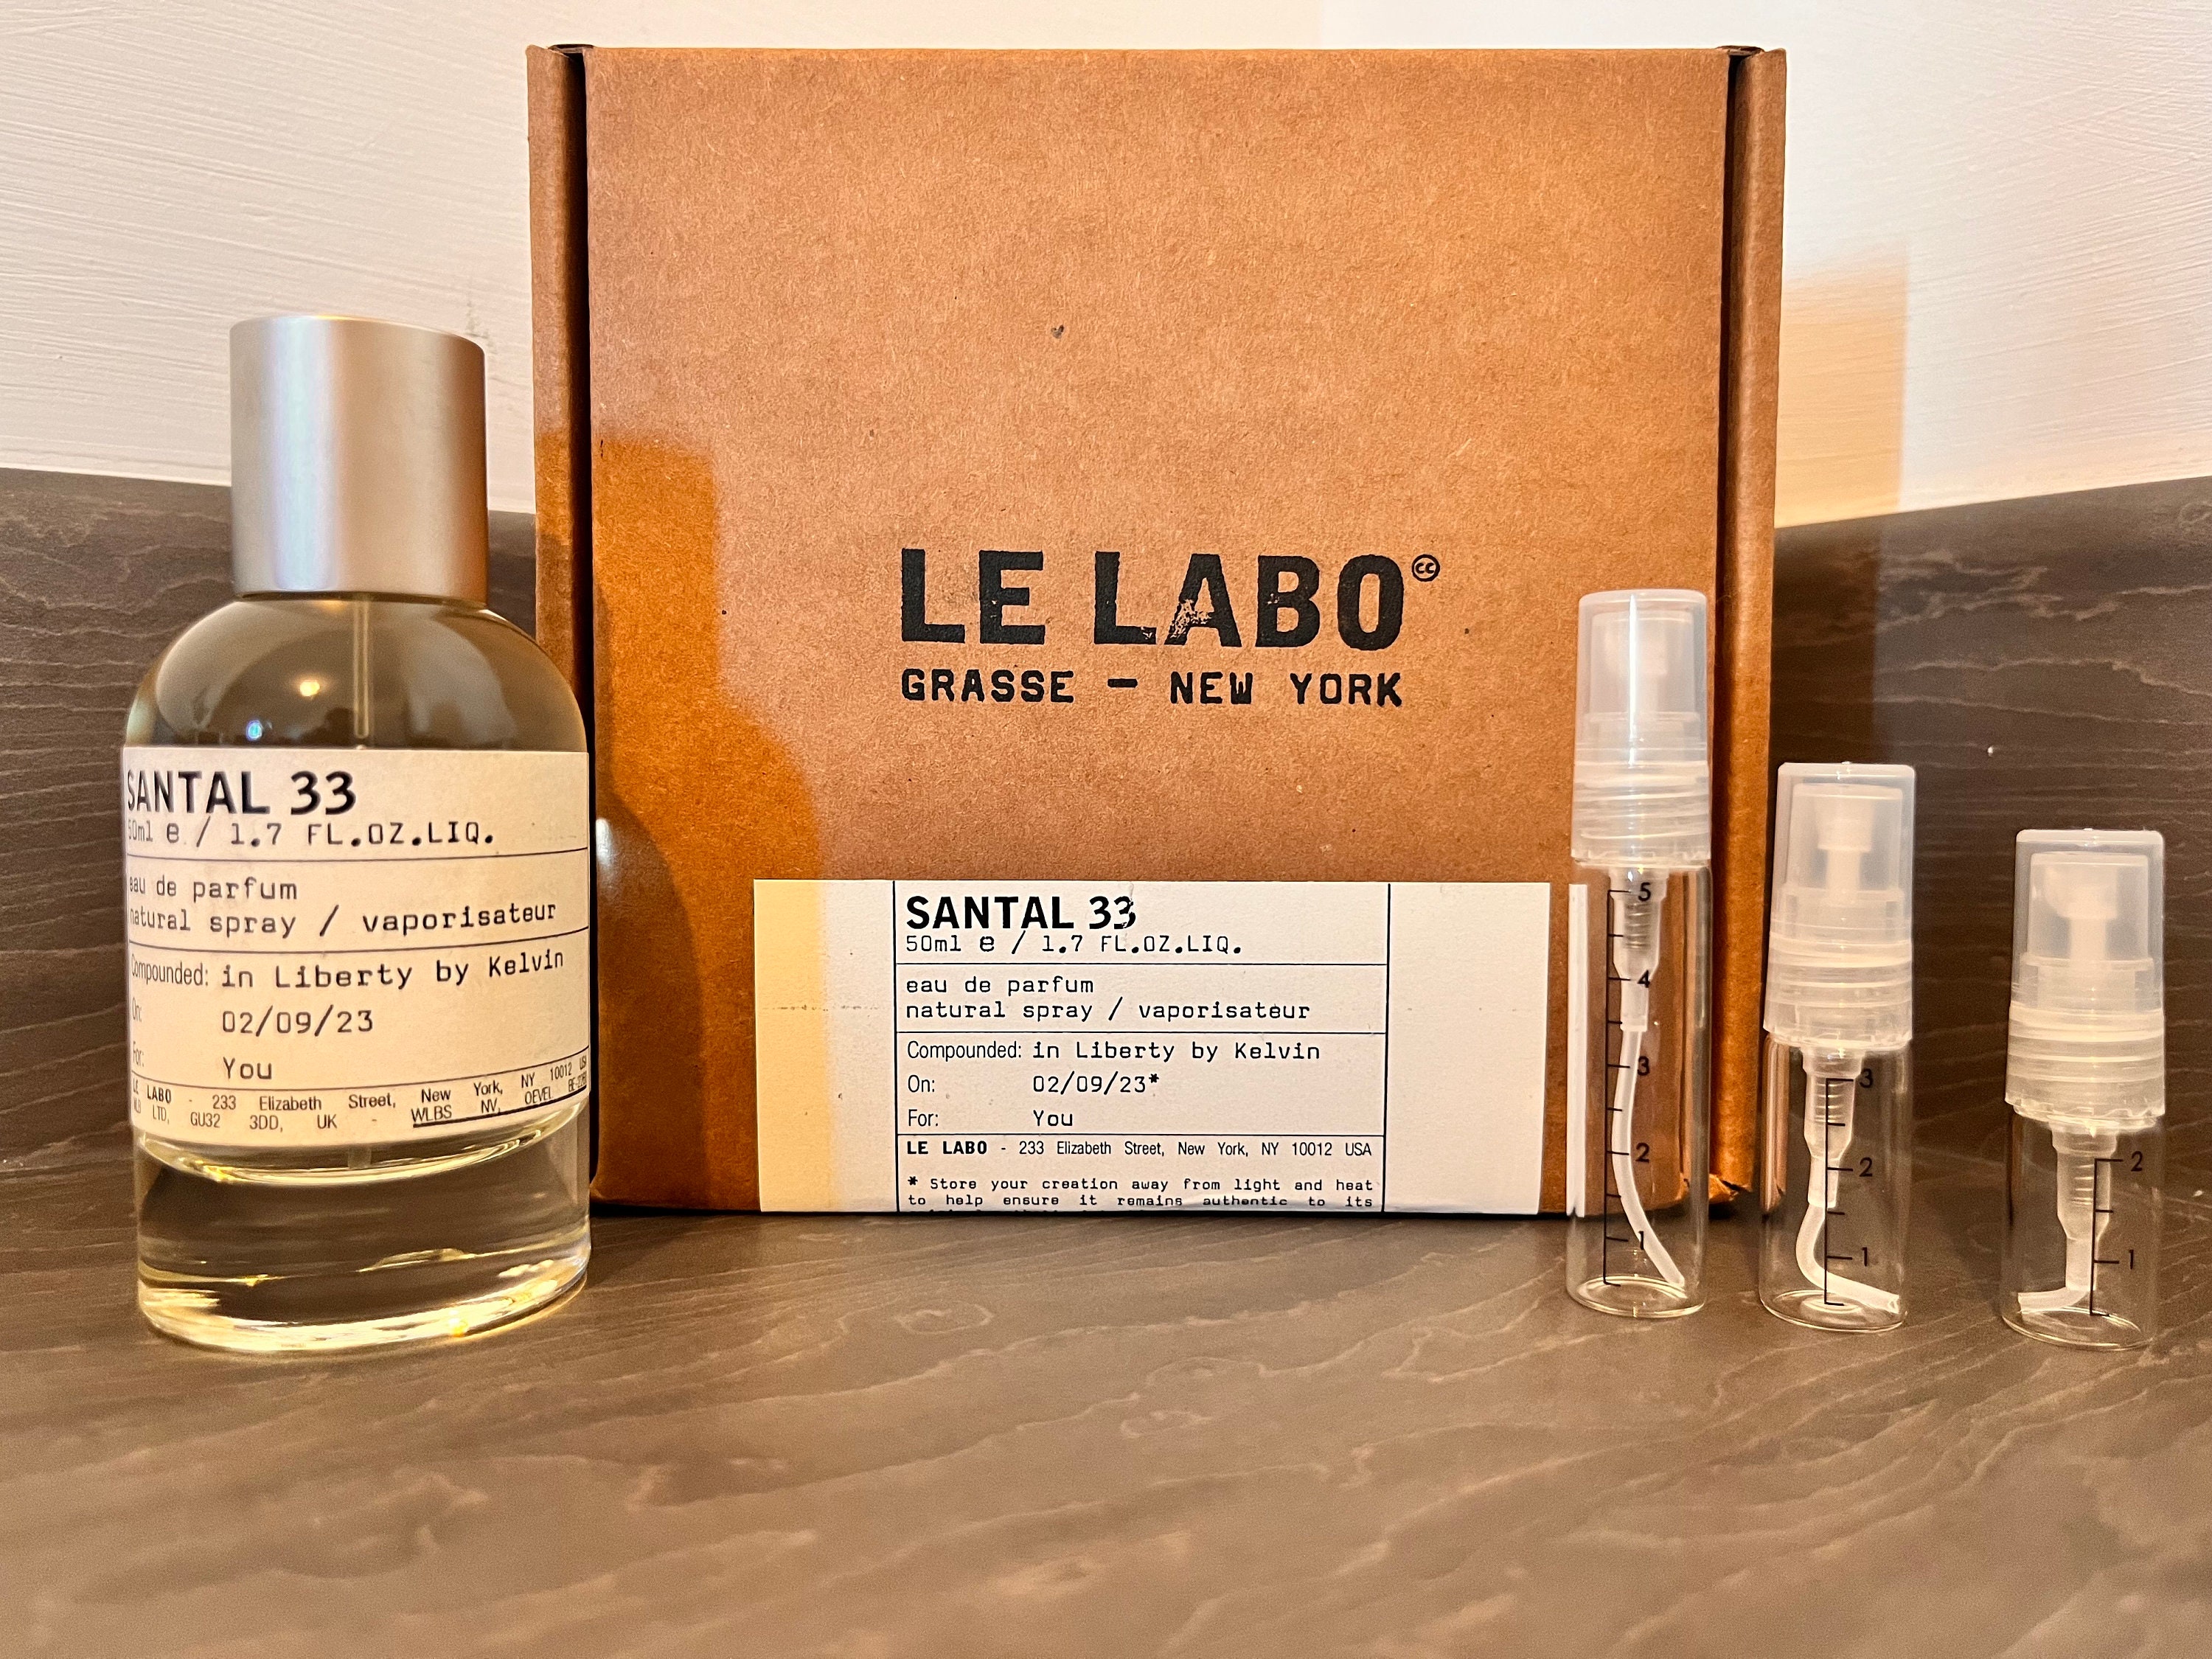 LOUIS VUITTON NUIT De Feu Eau De Parfum EDP 2ml Sample £10.99 - PicClick UK